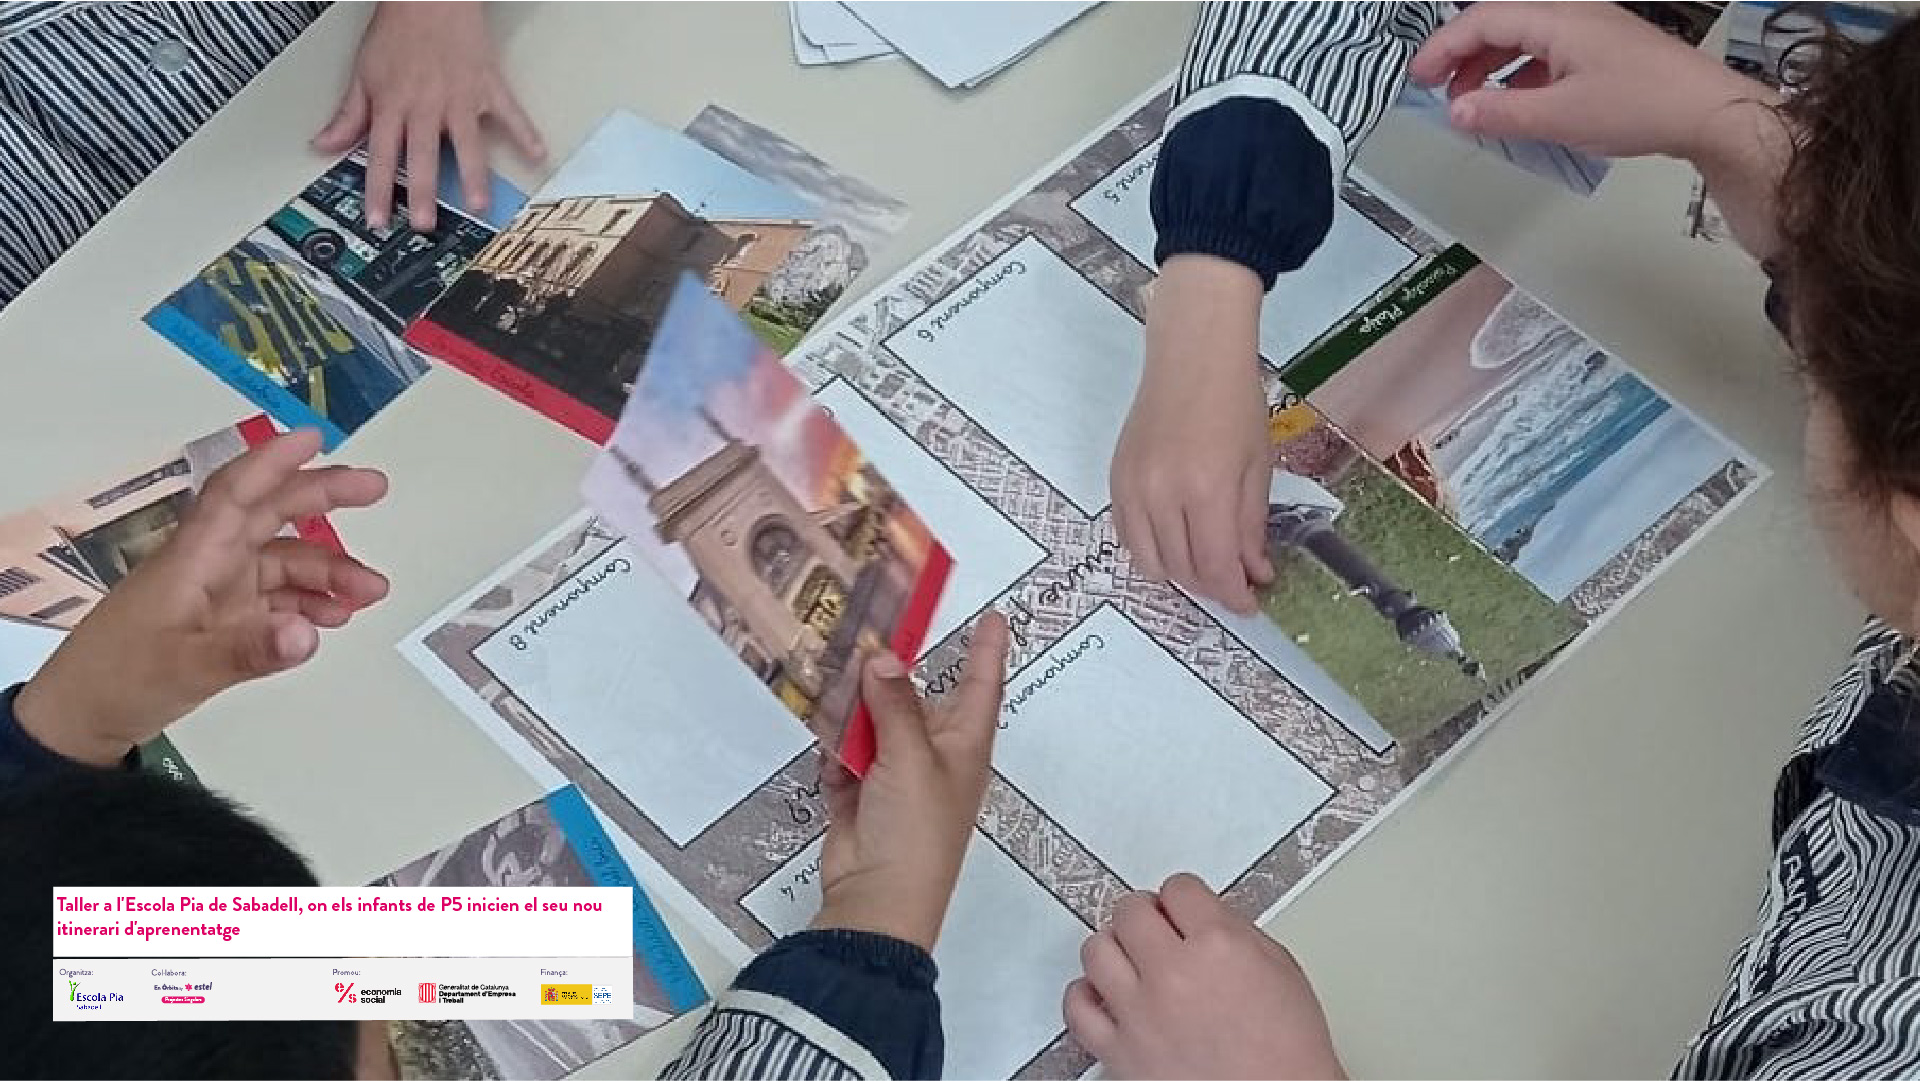 plantilla fotos_Taller a l'Escola Pia de Sabadell, on els infants de P5 inicien el seu nou itinerari d'aprenentatge